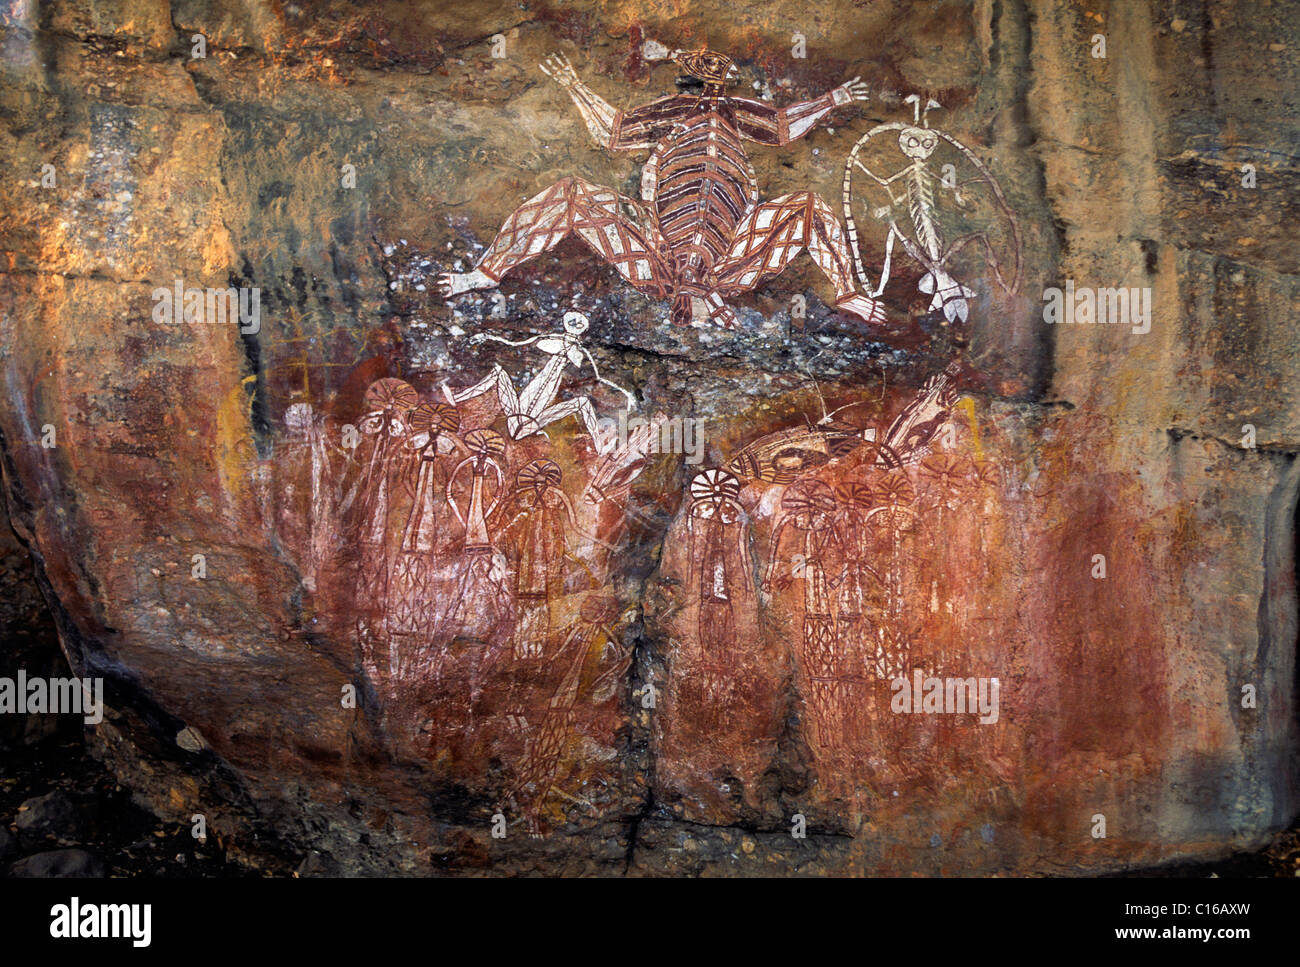 Gruppo di fantasmi, le pitture rupestri della aborigenis sul nourlangie rock, il parco nazionale Kakadu, Territorio del Nord, l'australia Foto Stock